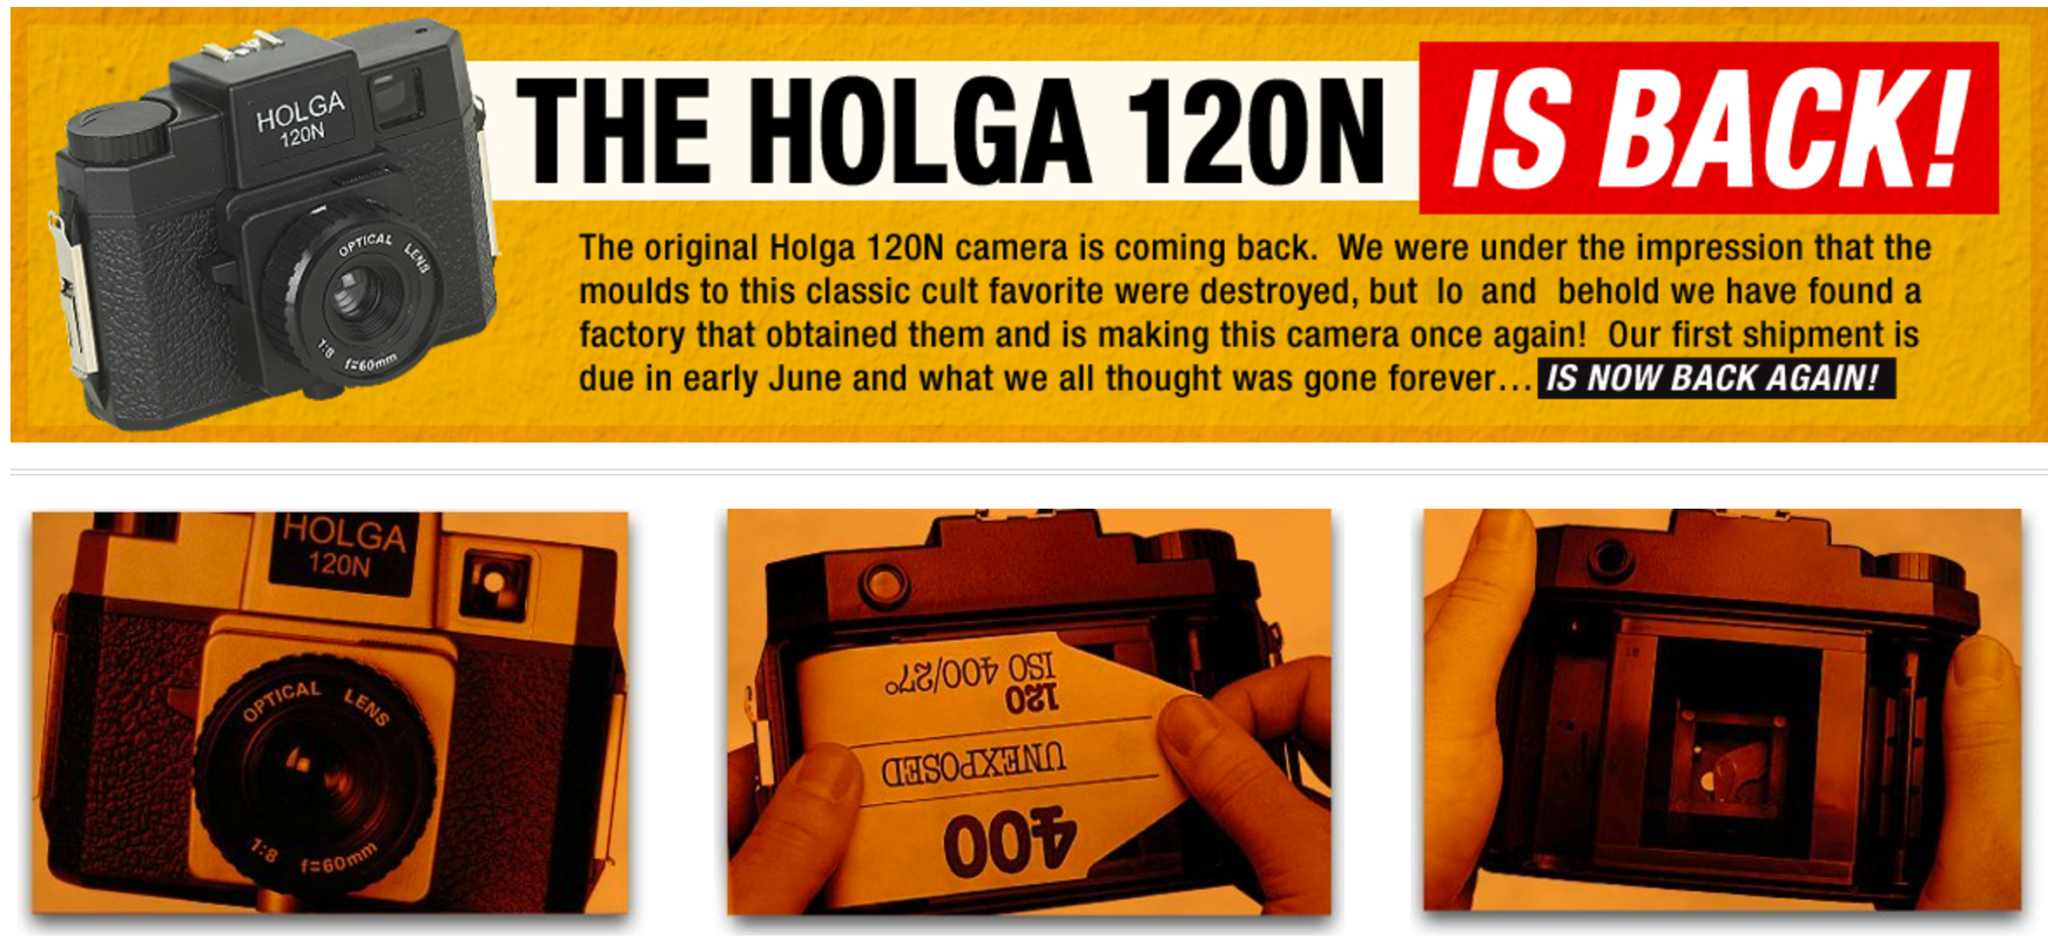 Good News! The Holga Camera is Coming Back!